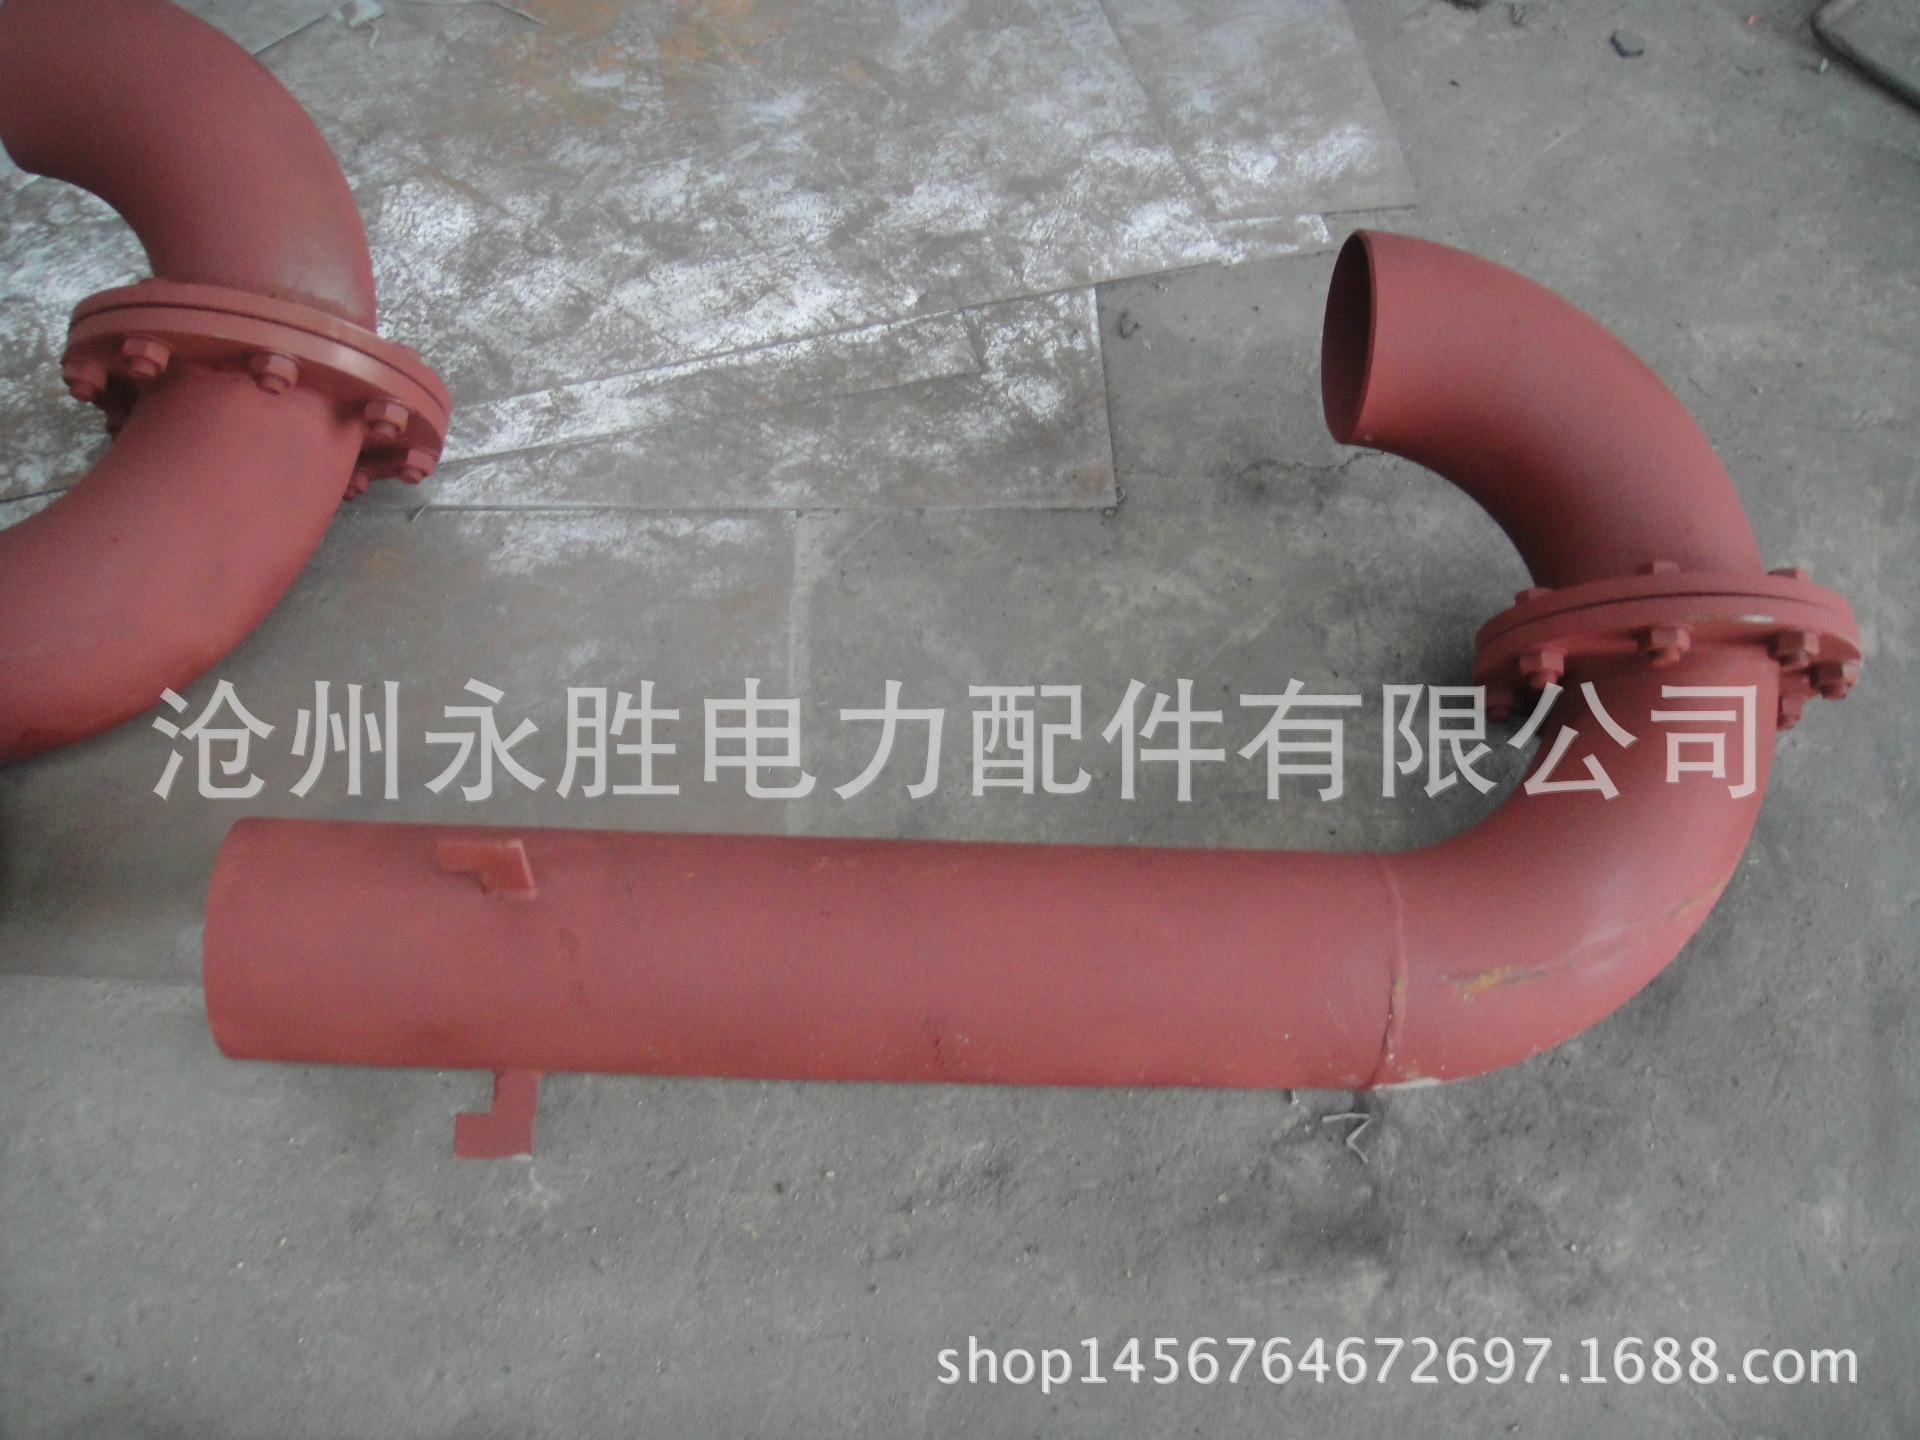 02S403-98弯管 碳钢弯管型通气管 W-200弯管型通气管 厂家示例图136